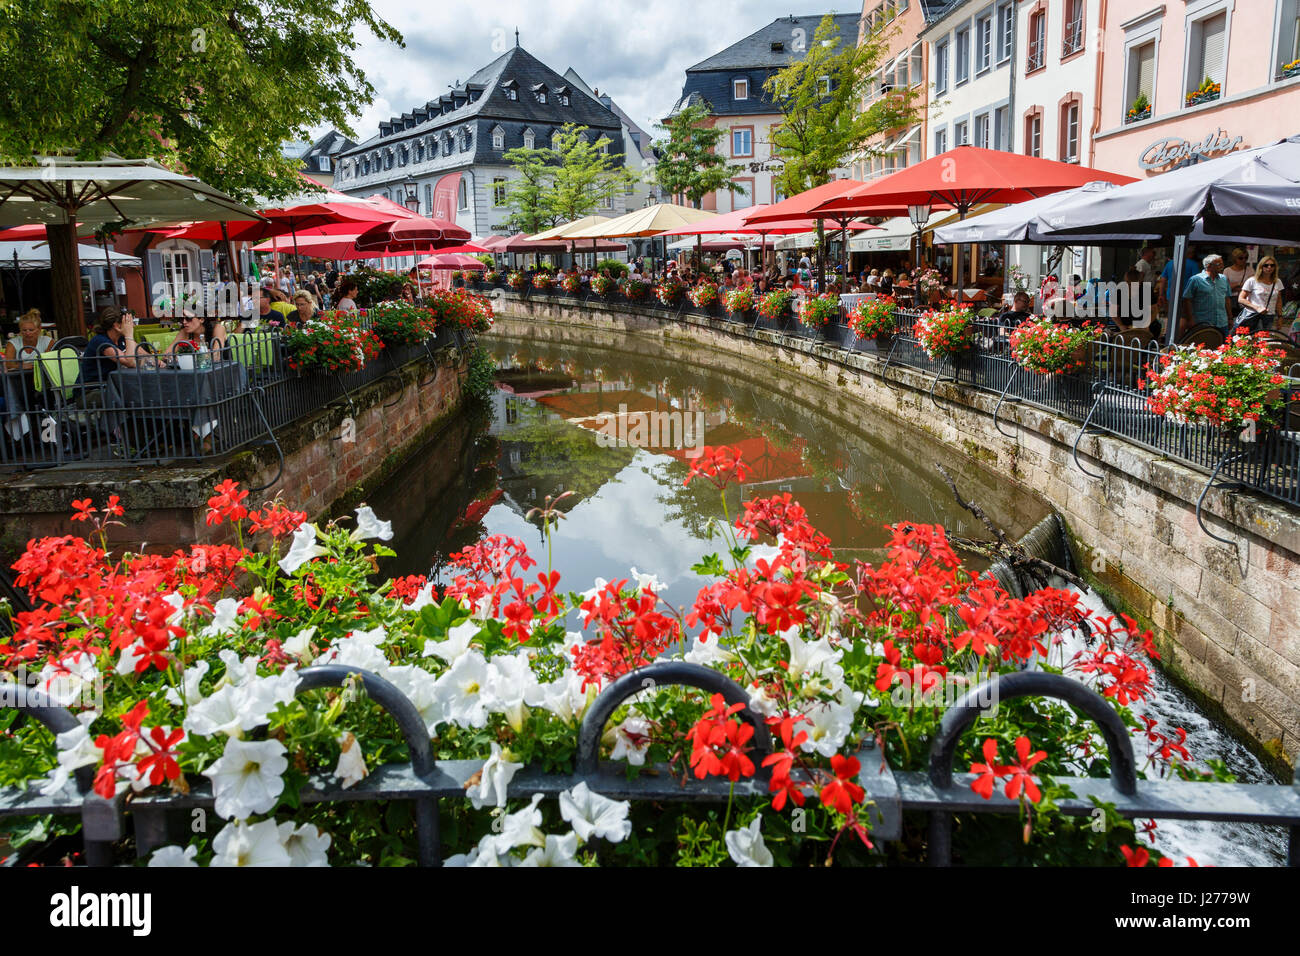 La rivière Leuk bordée de restaurants à Bernkastel-kues, Allemagne Banque D'Images